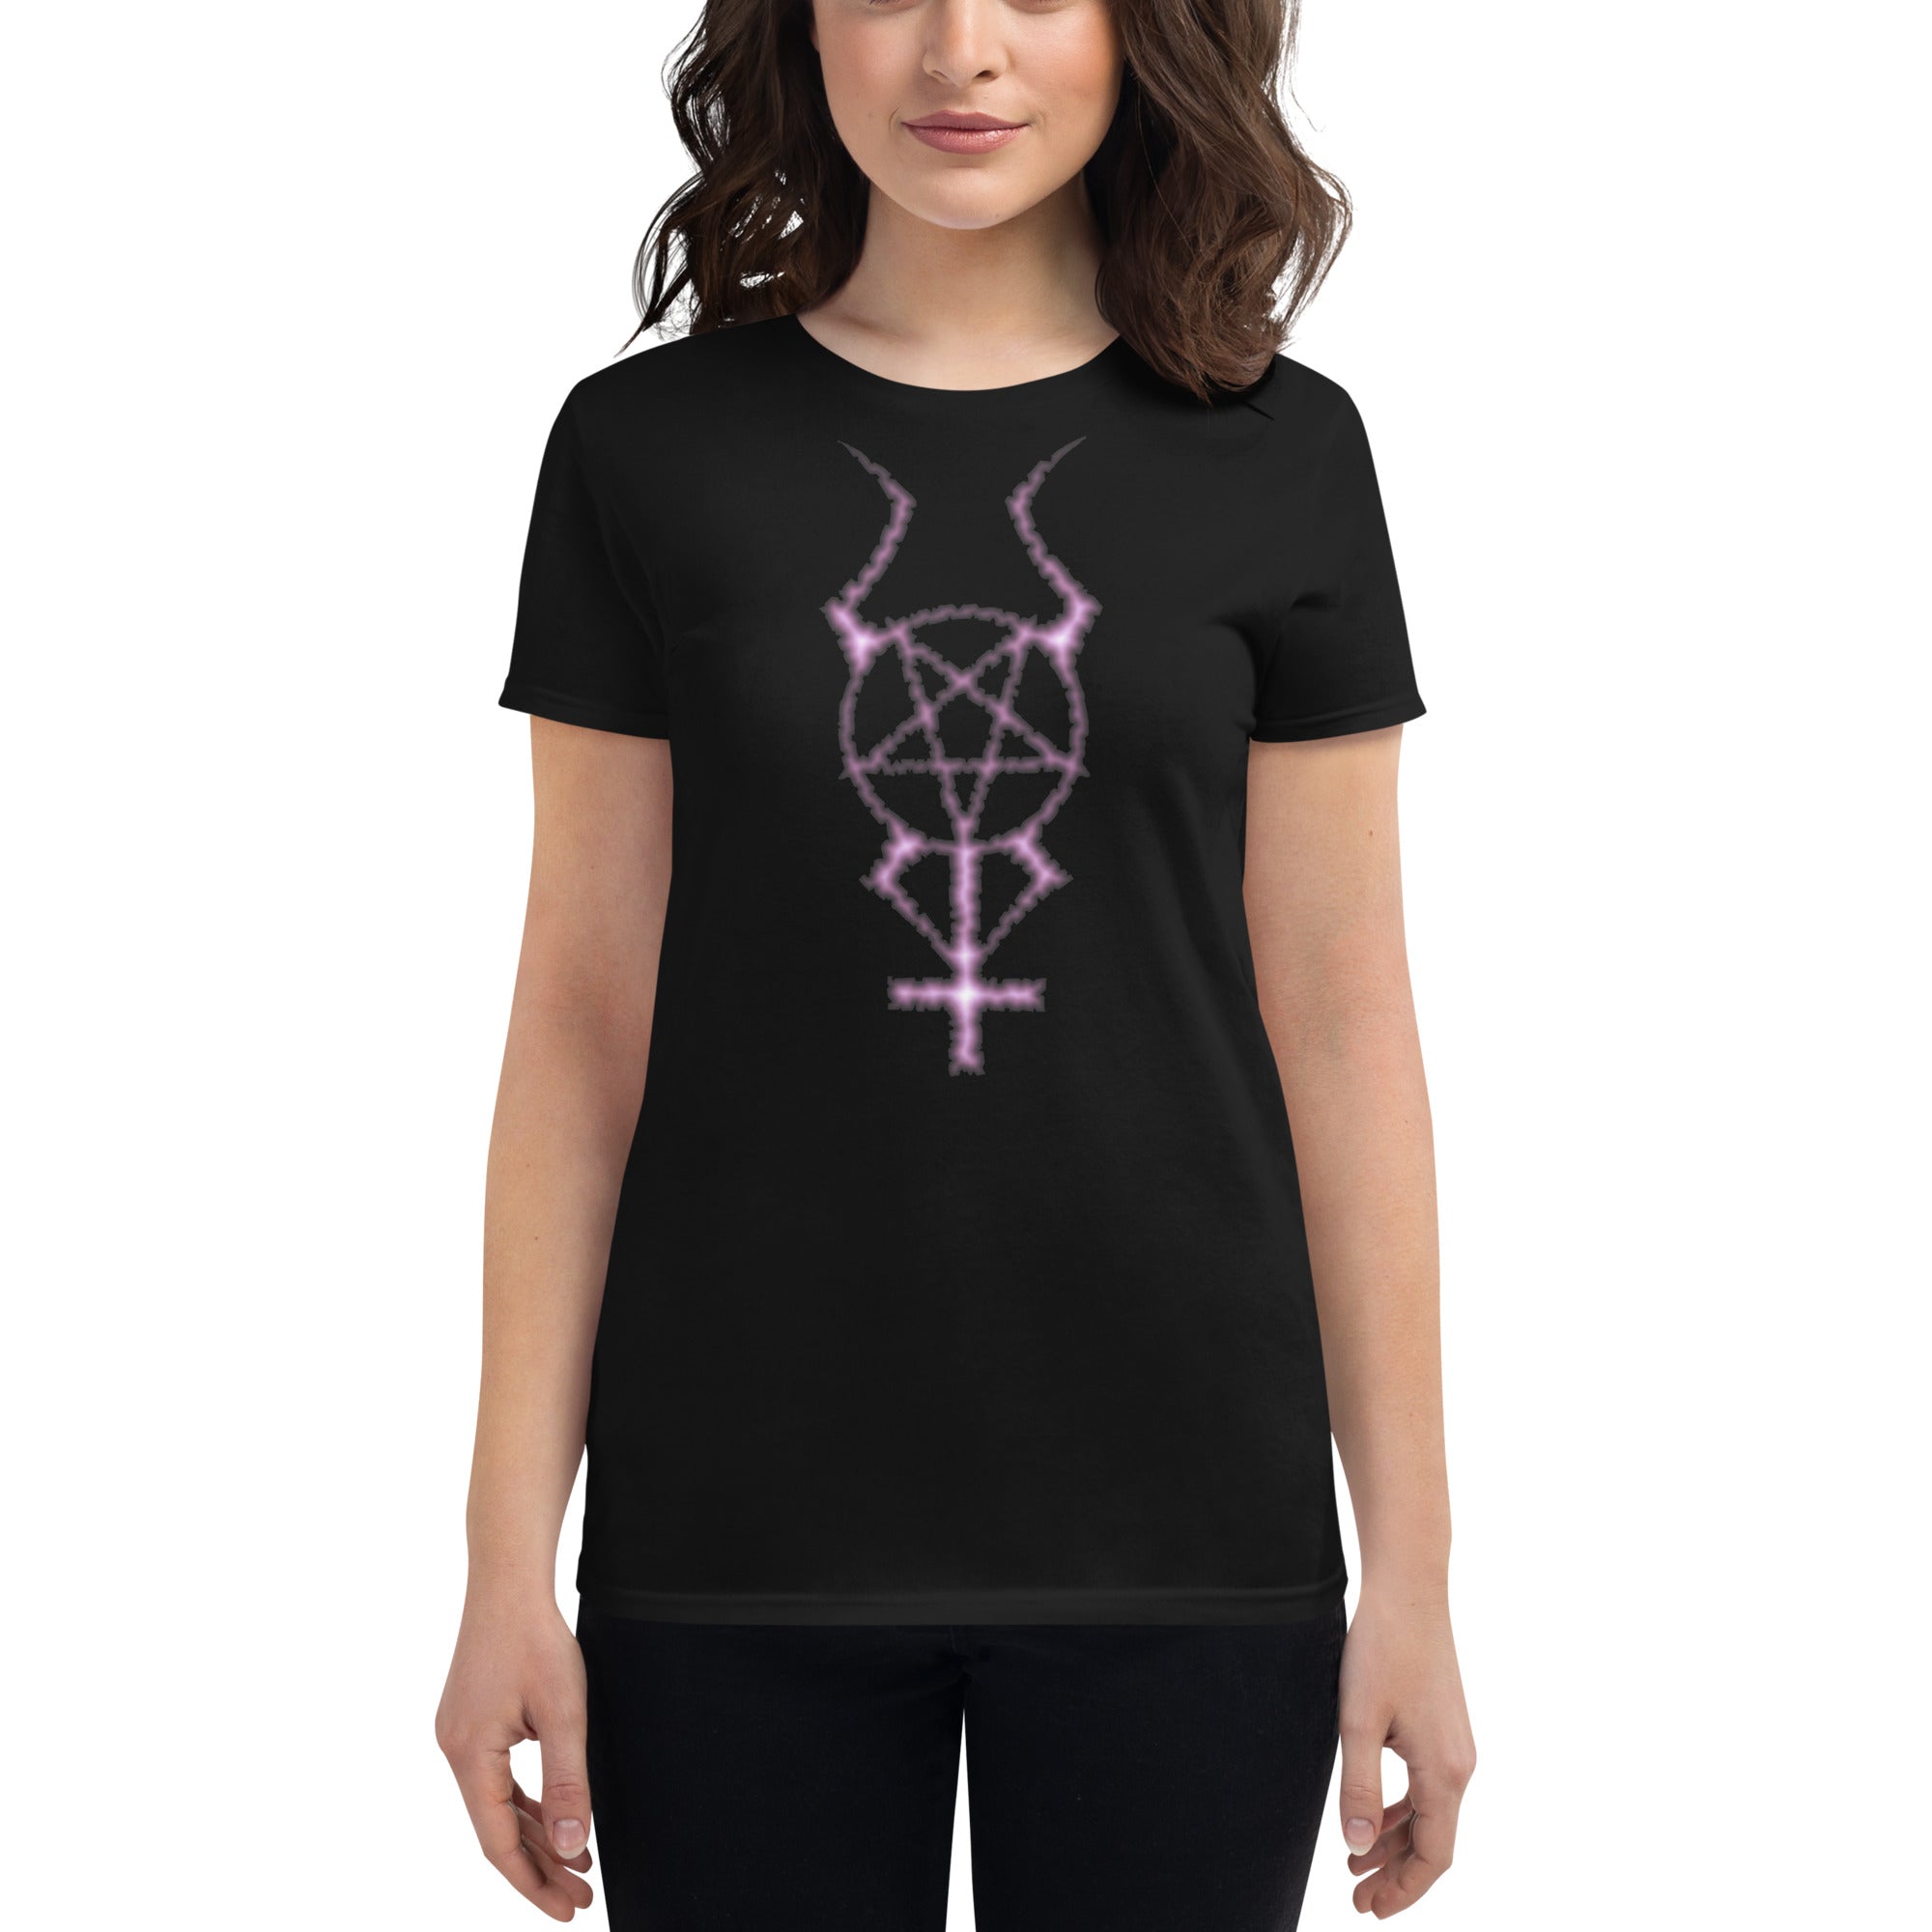 Dark Forces Horned Pentacross Pentagram Cross Women's Short Sleeve Babydoll T-shirt